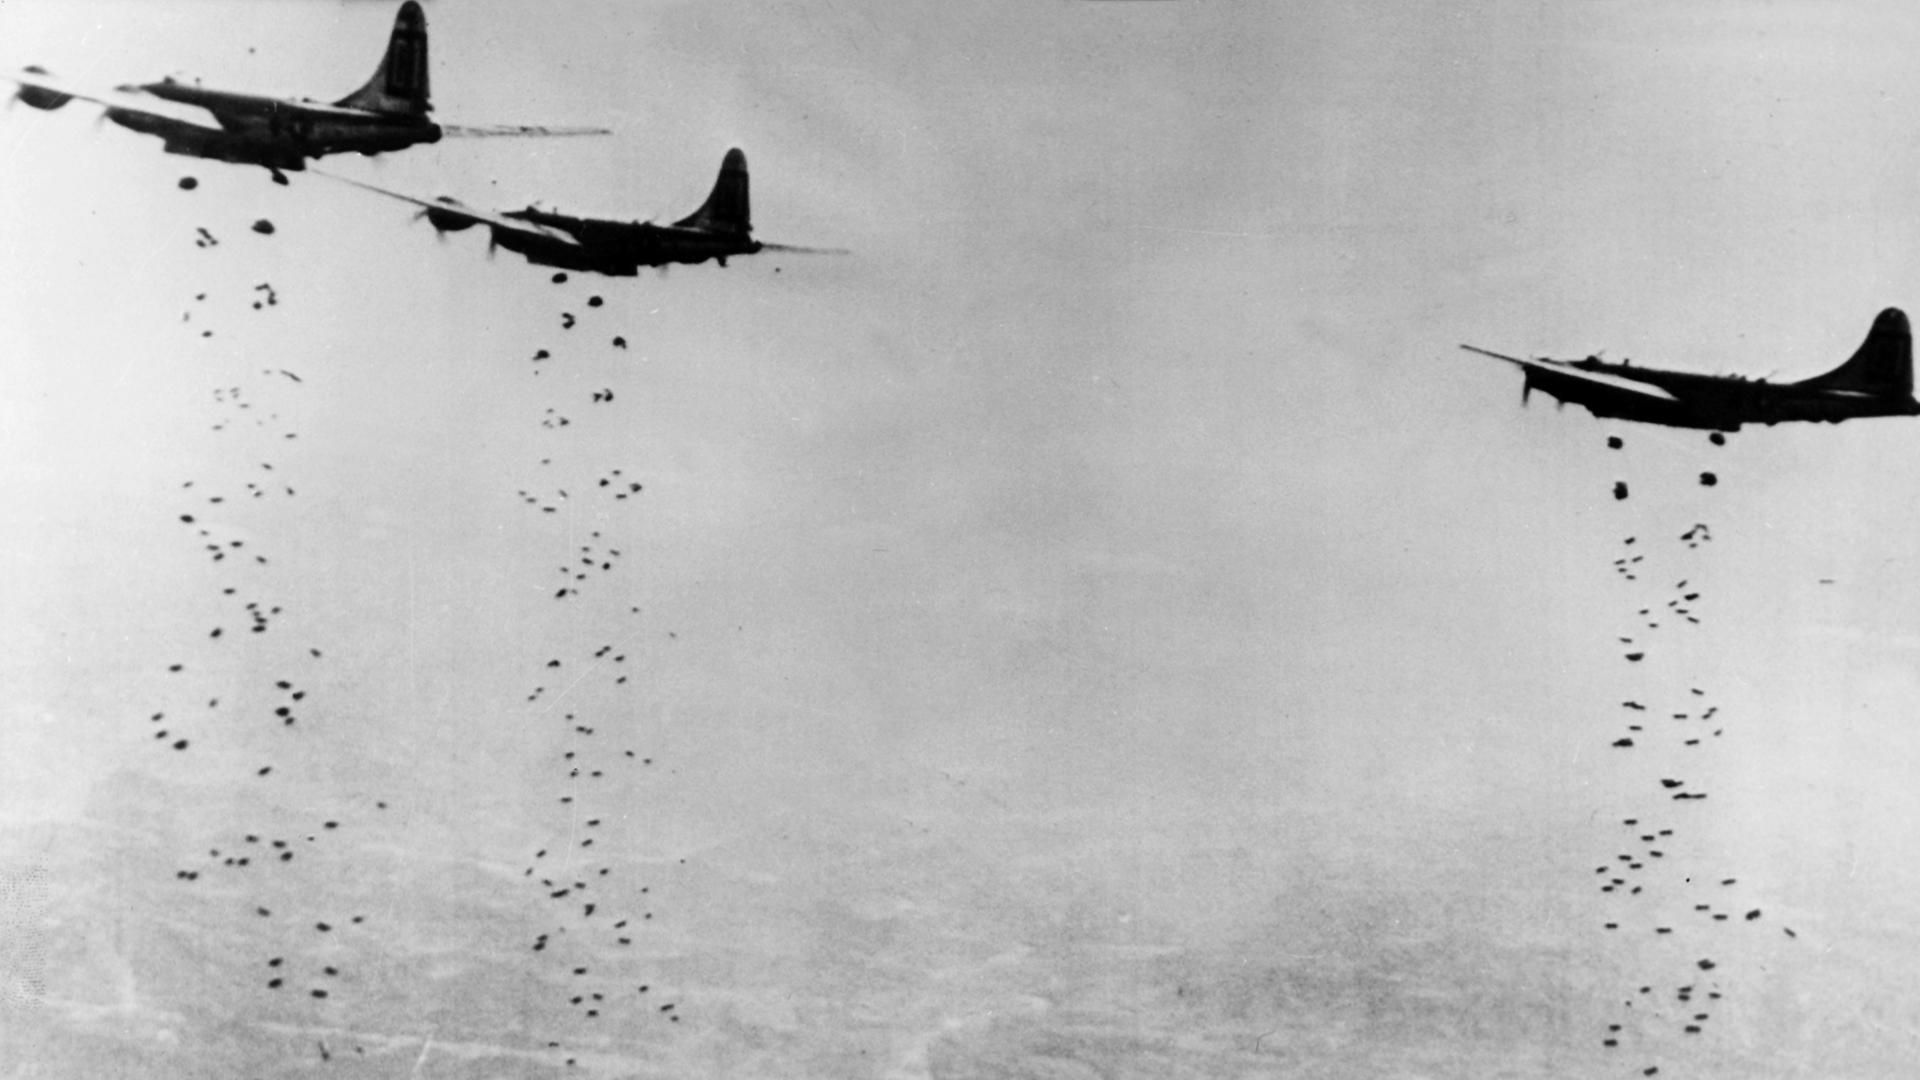 Amerikanische Flugzeuge werfen während des Koreakrieges im Januar 1951 Bomben ab.